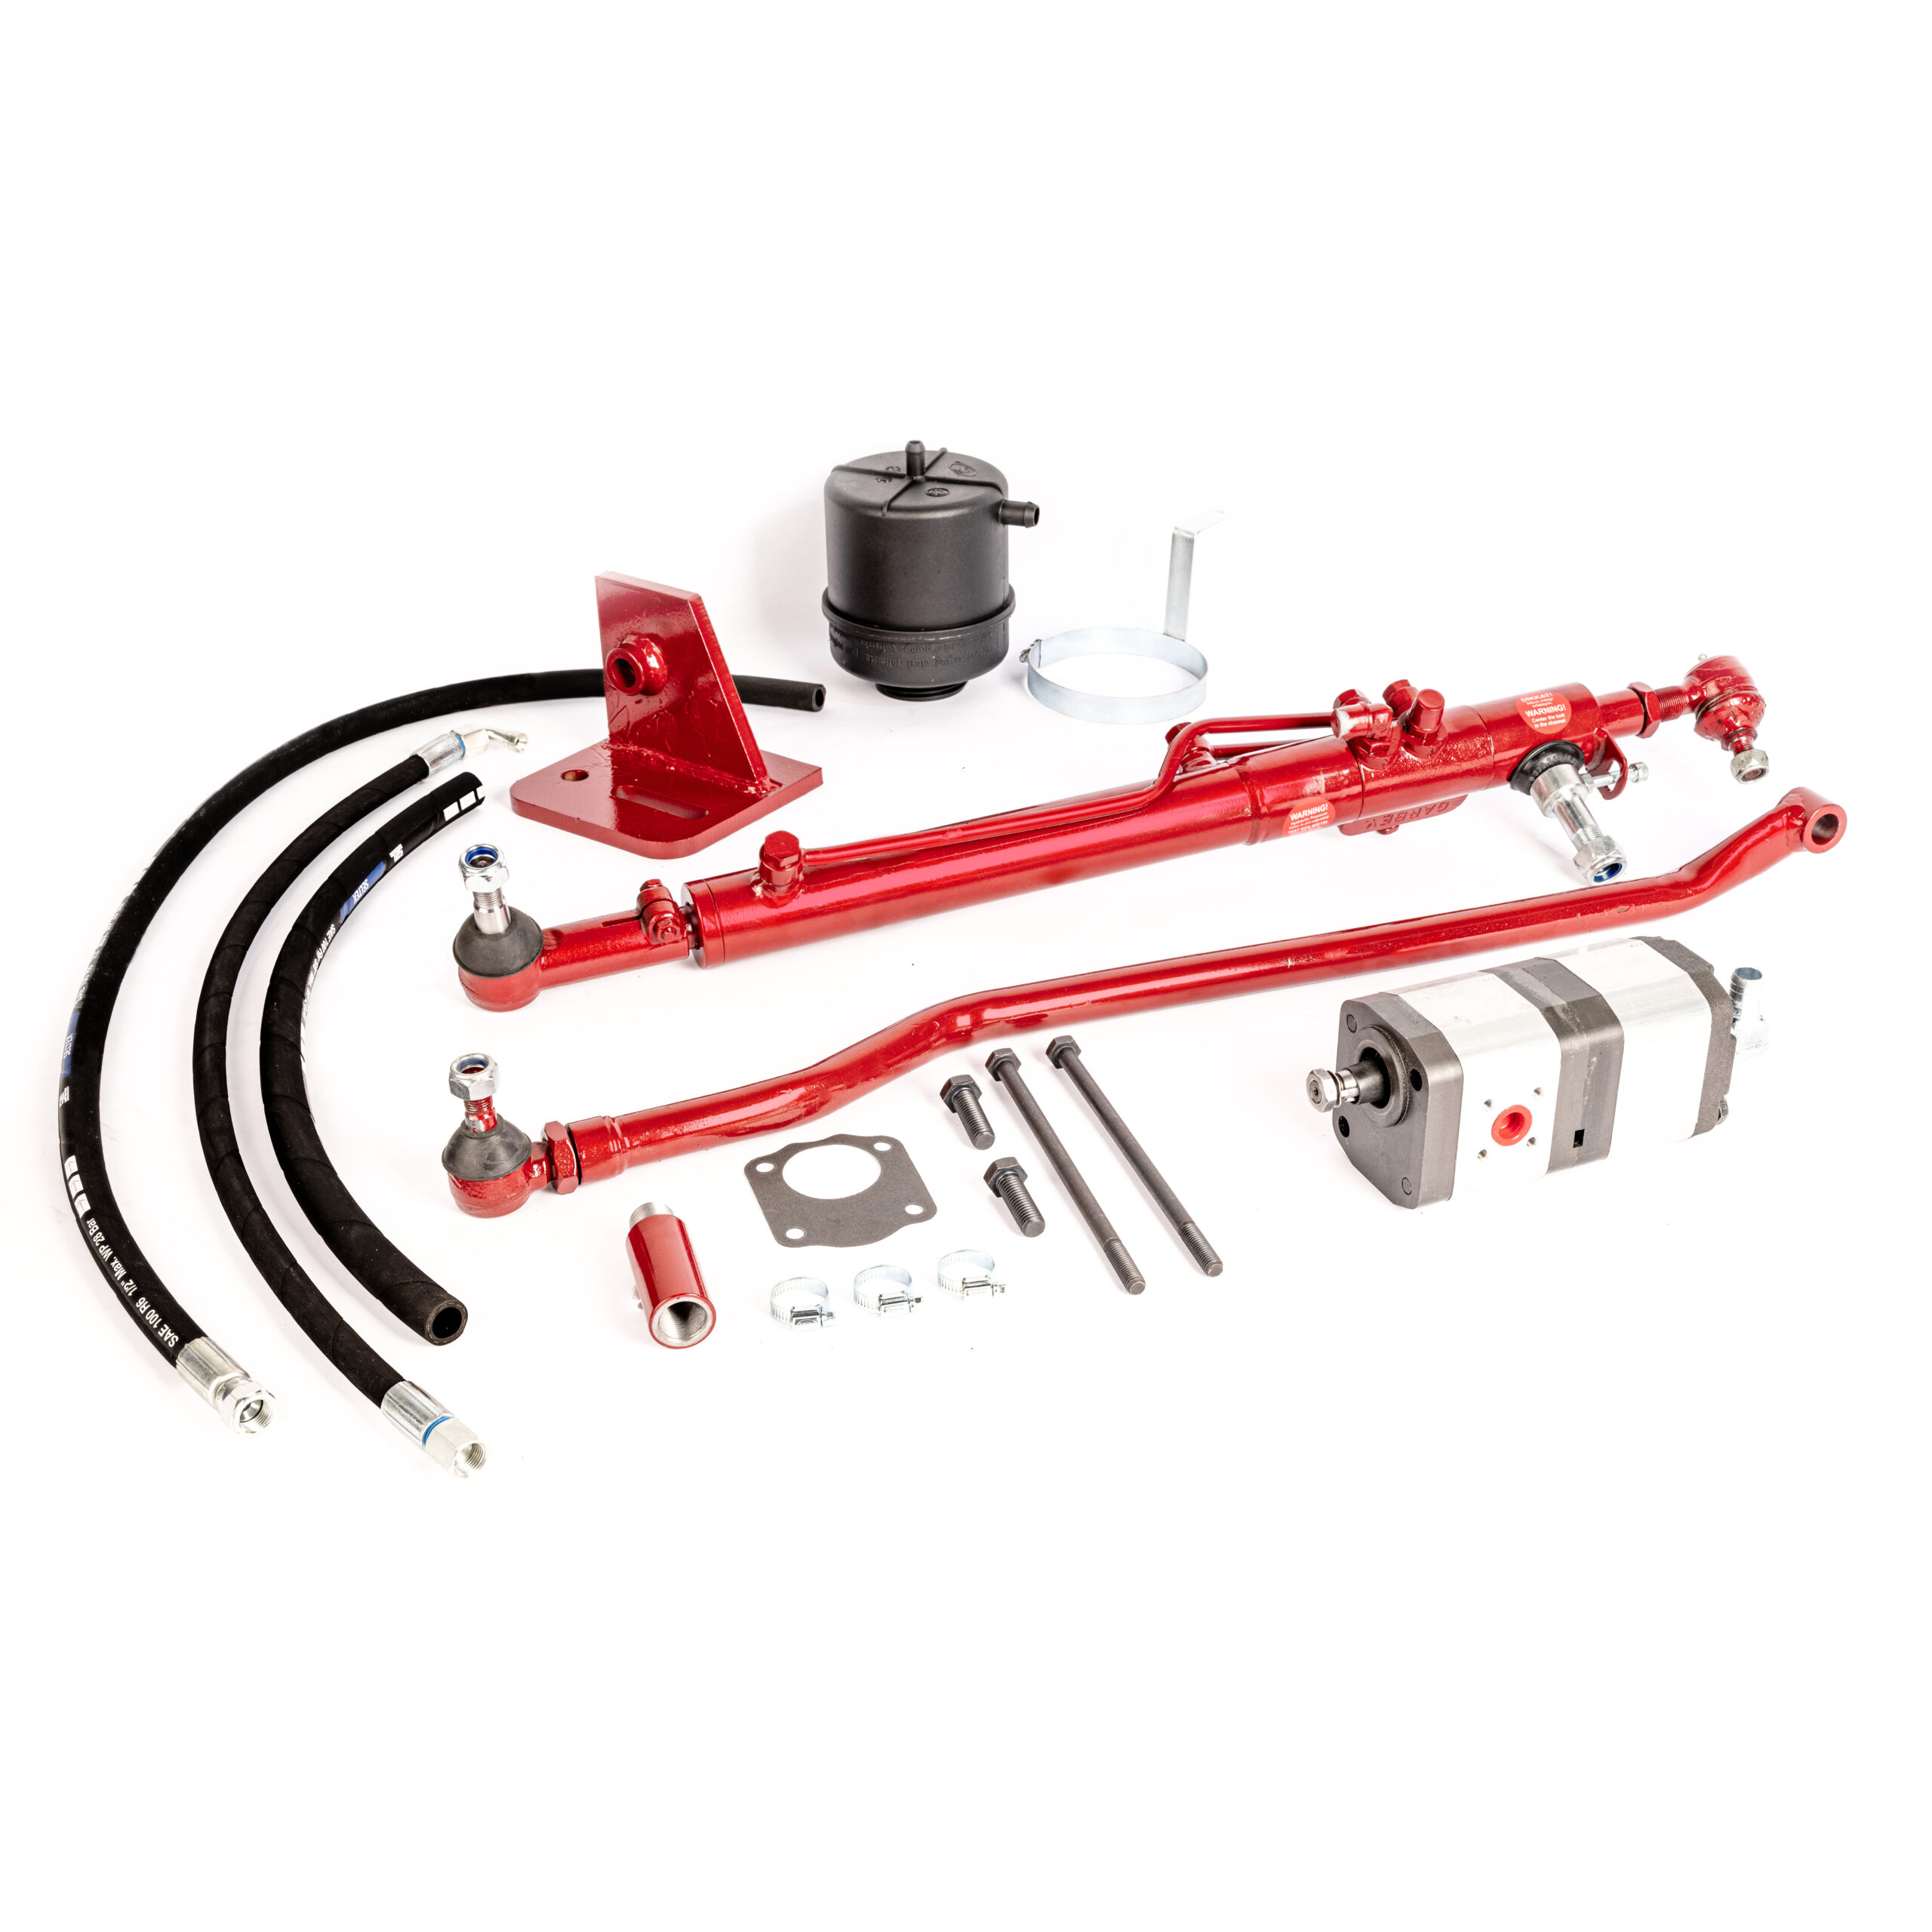 Power Steering Kit for Case IH 624 644 654 654S